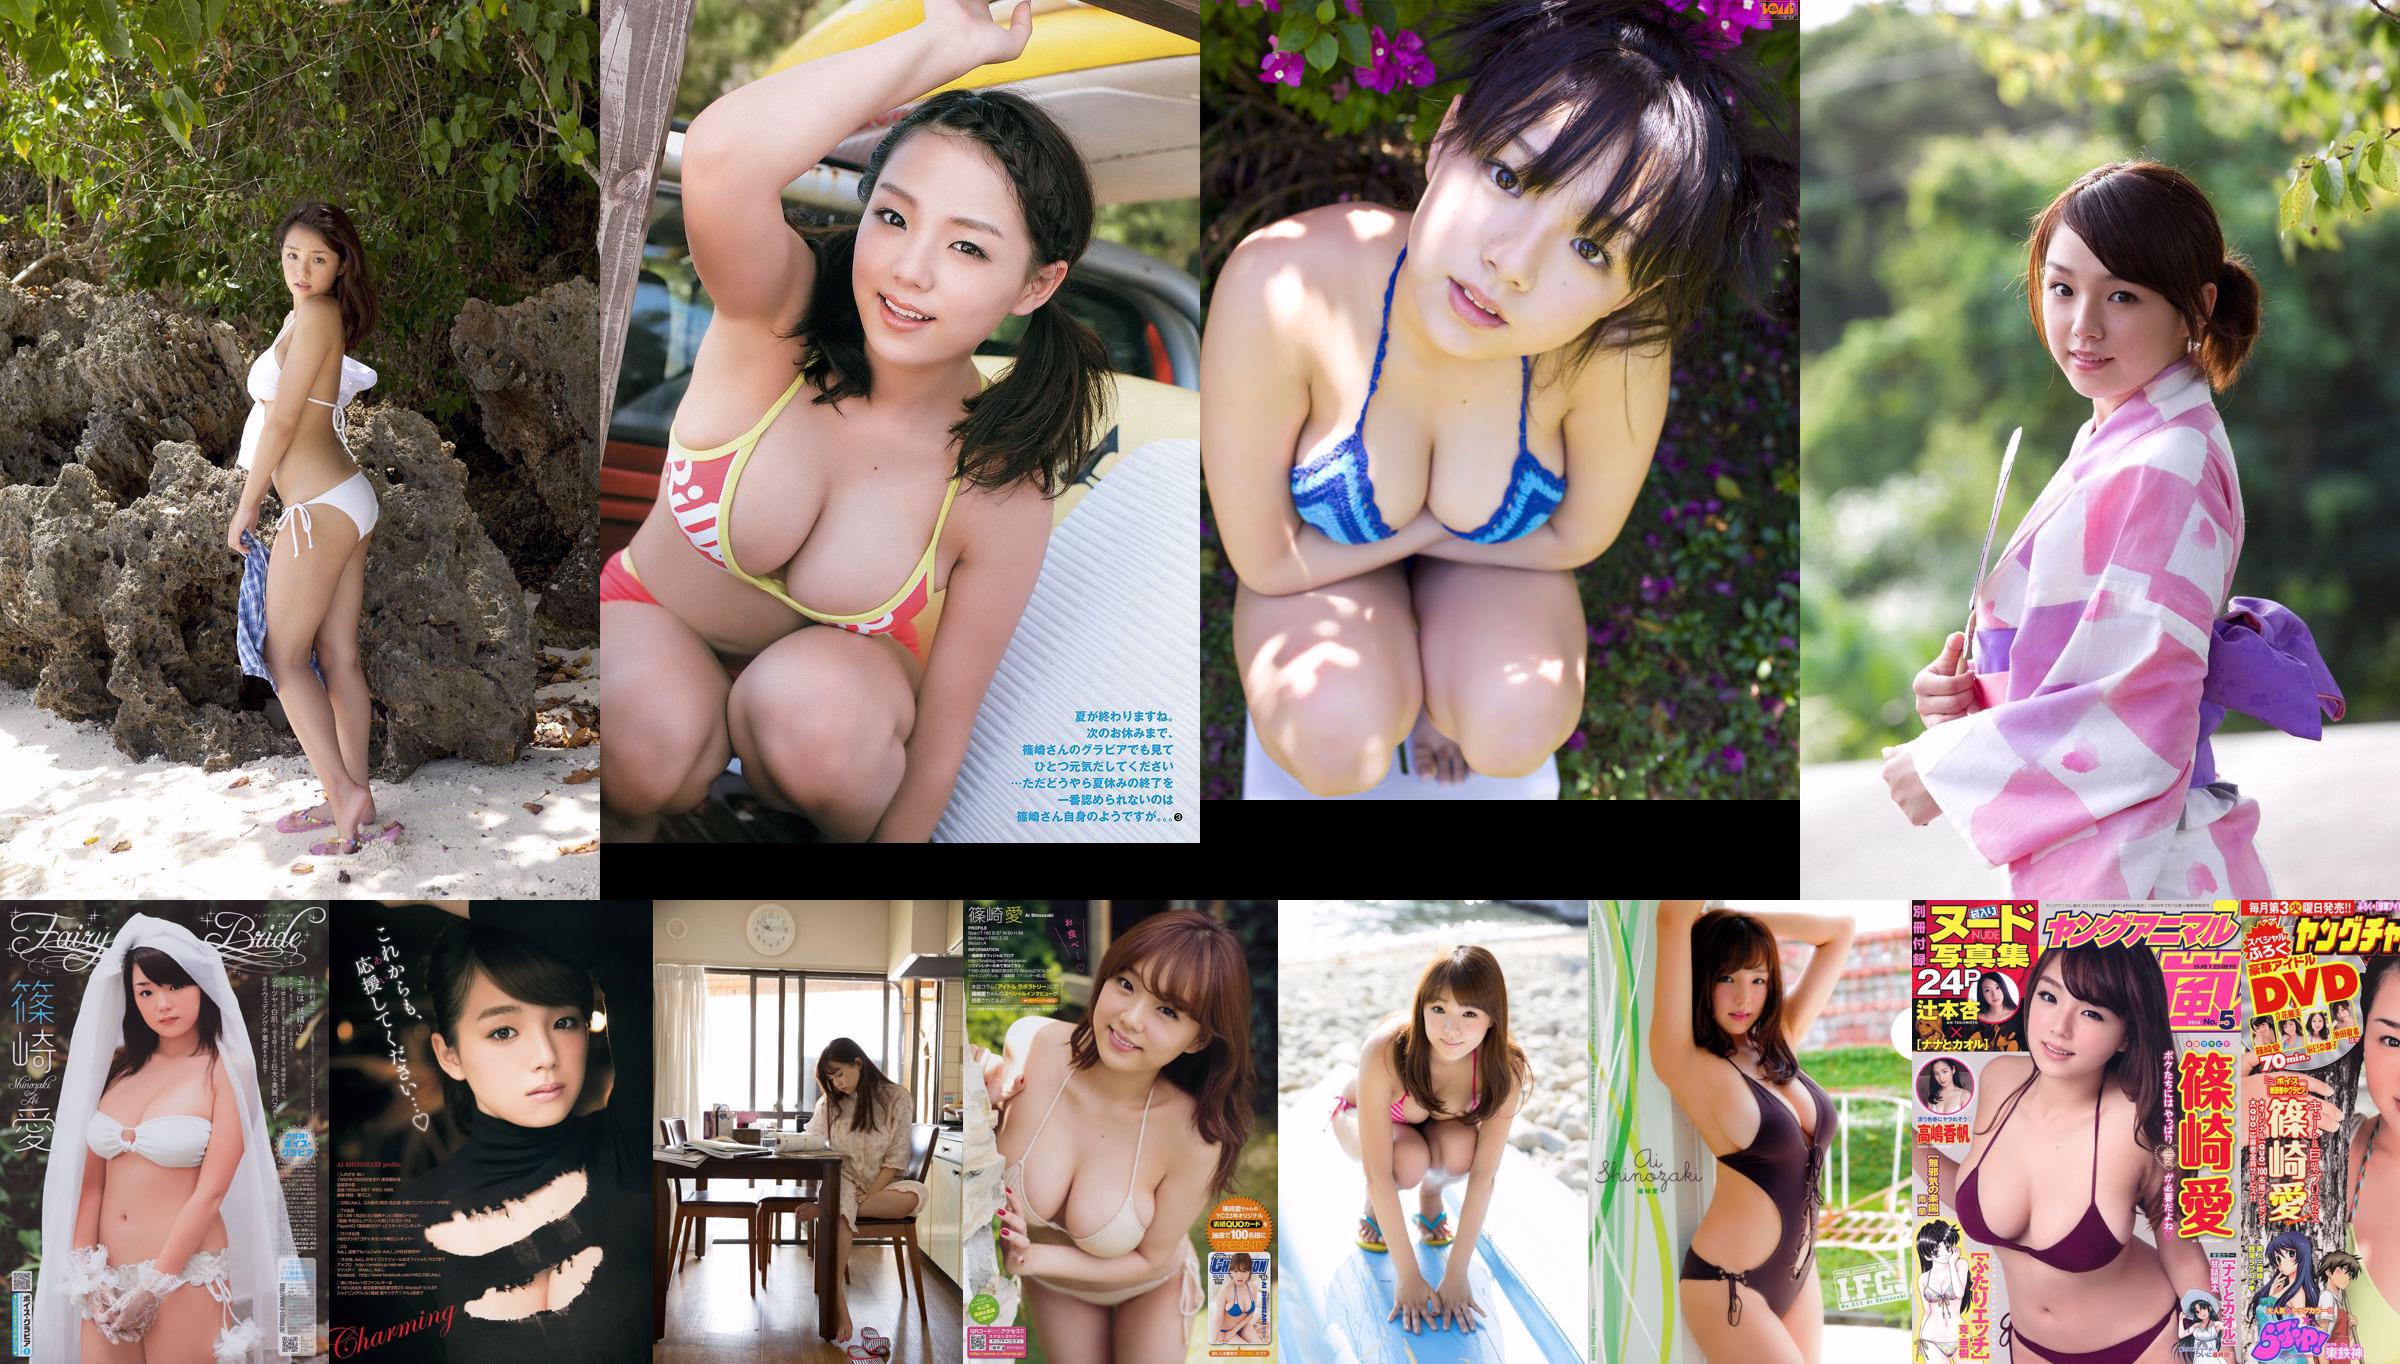 [Young Magazine] Nozomi Sasaki Seira Jonishi 2014 No.22-23 Photograph No.4d429d Page 1